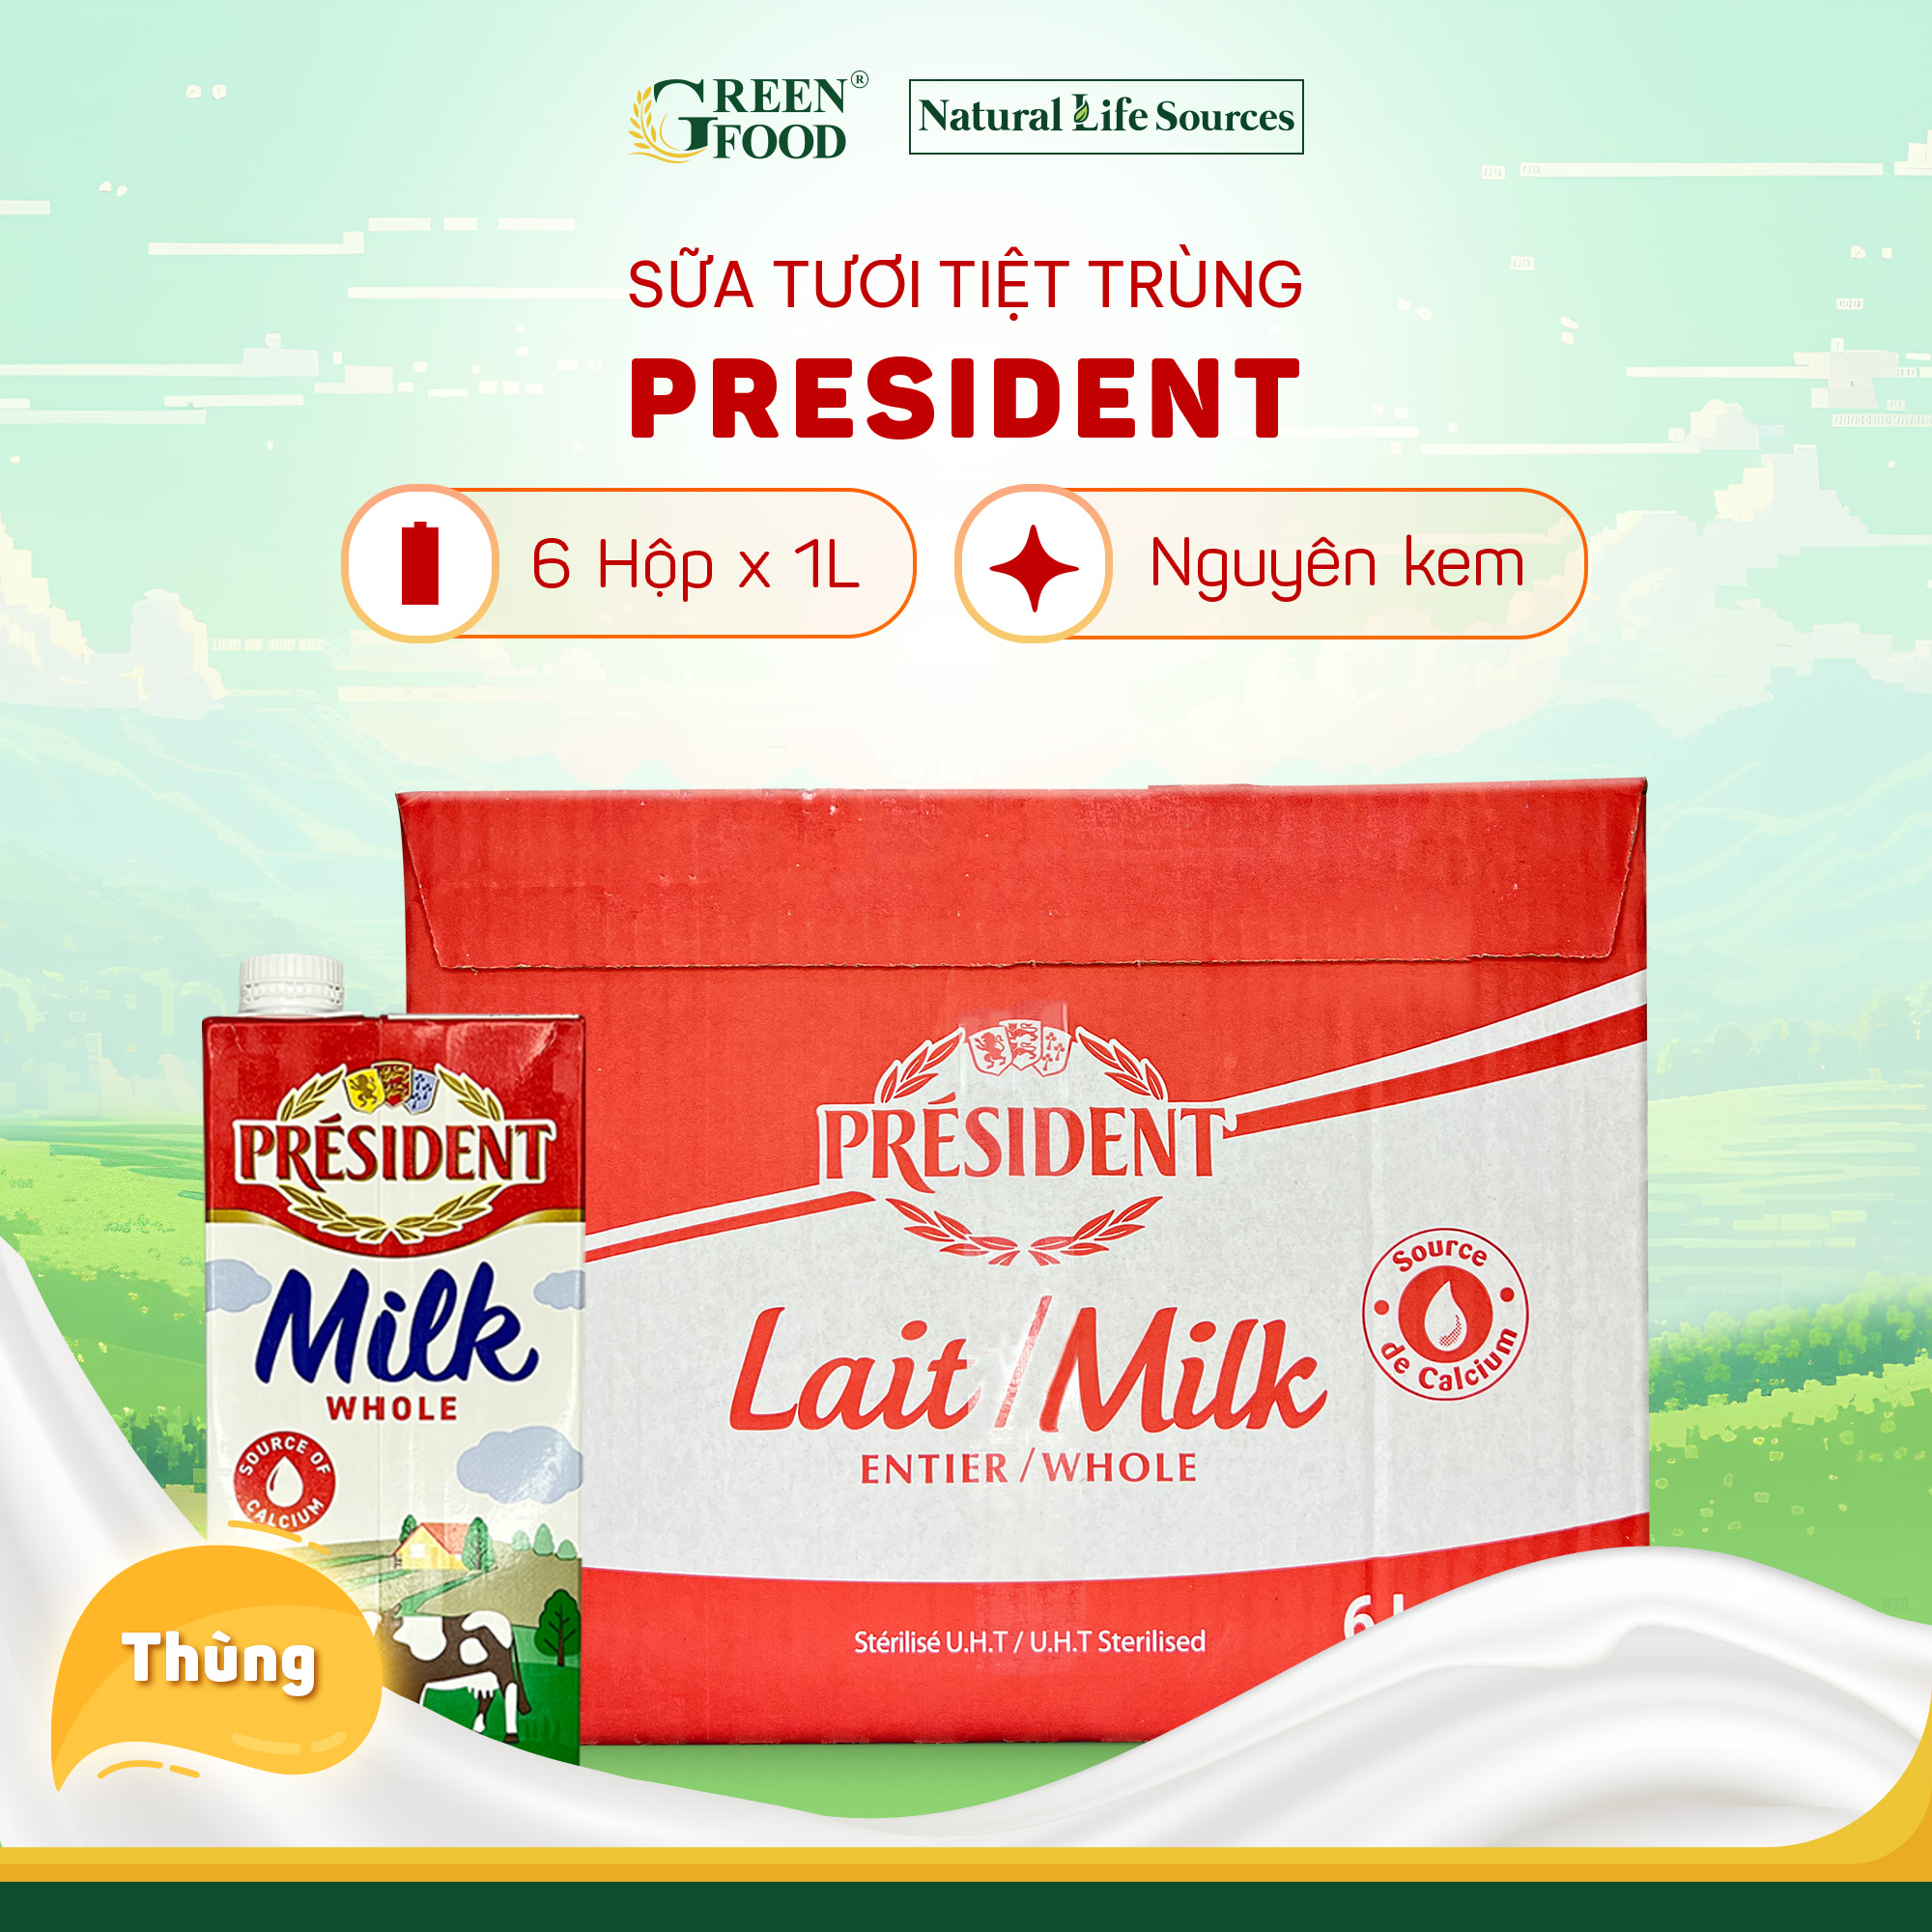 Thùng 6 Hộp Sữa tươi tiệt trùng nguyên kem cao cấp President không đường | Hộp 1L - Nhập khẩu chính hãng từ Pháp